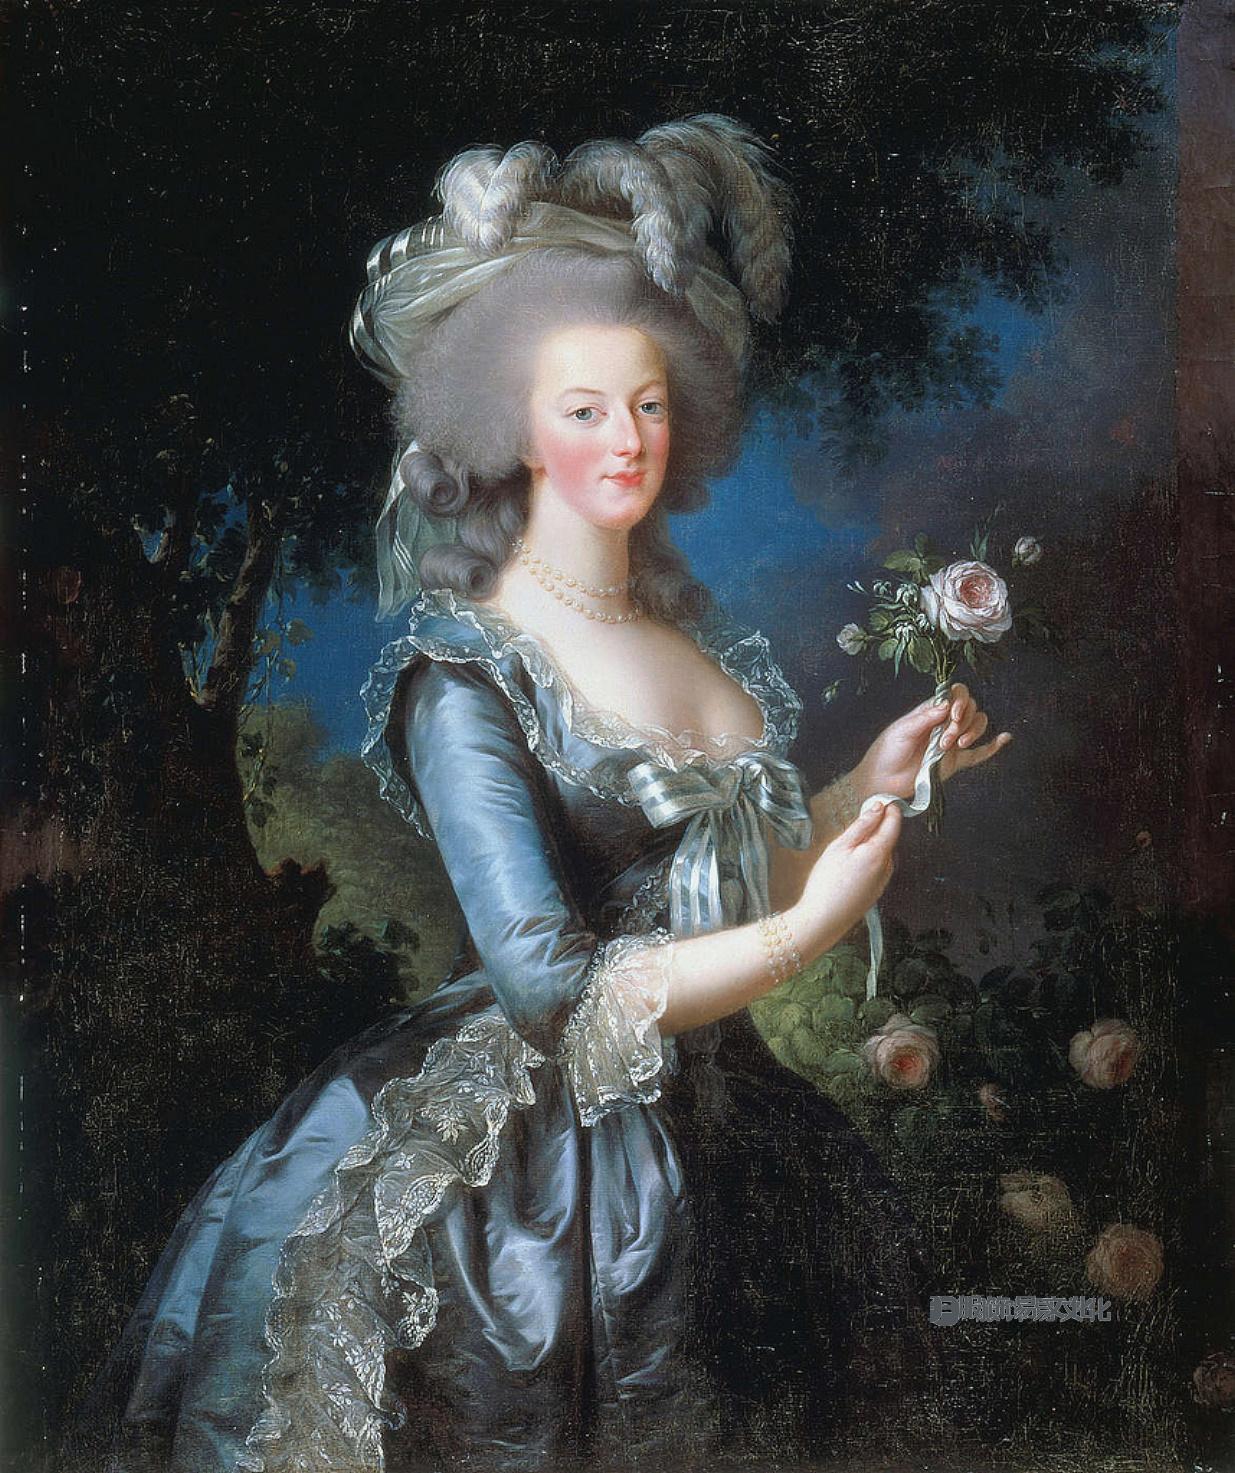 伊丽莎白·维吉·勒布伦，玛丽·安托瓦内特，法国女王，1783 年，法国凡尔赛宫凡尔赛宫。 18世纪时尚